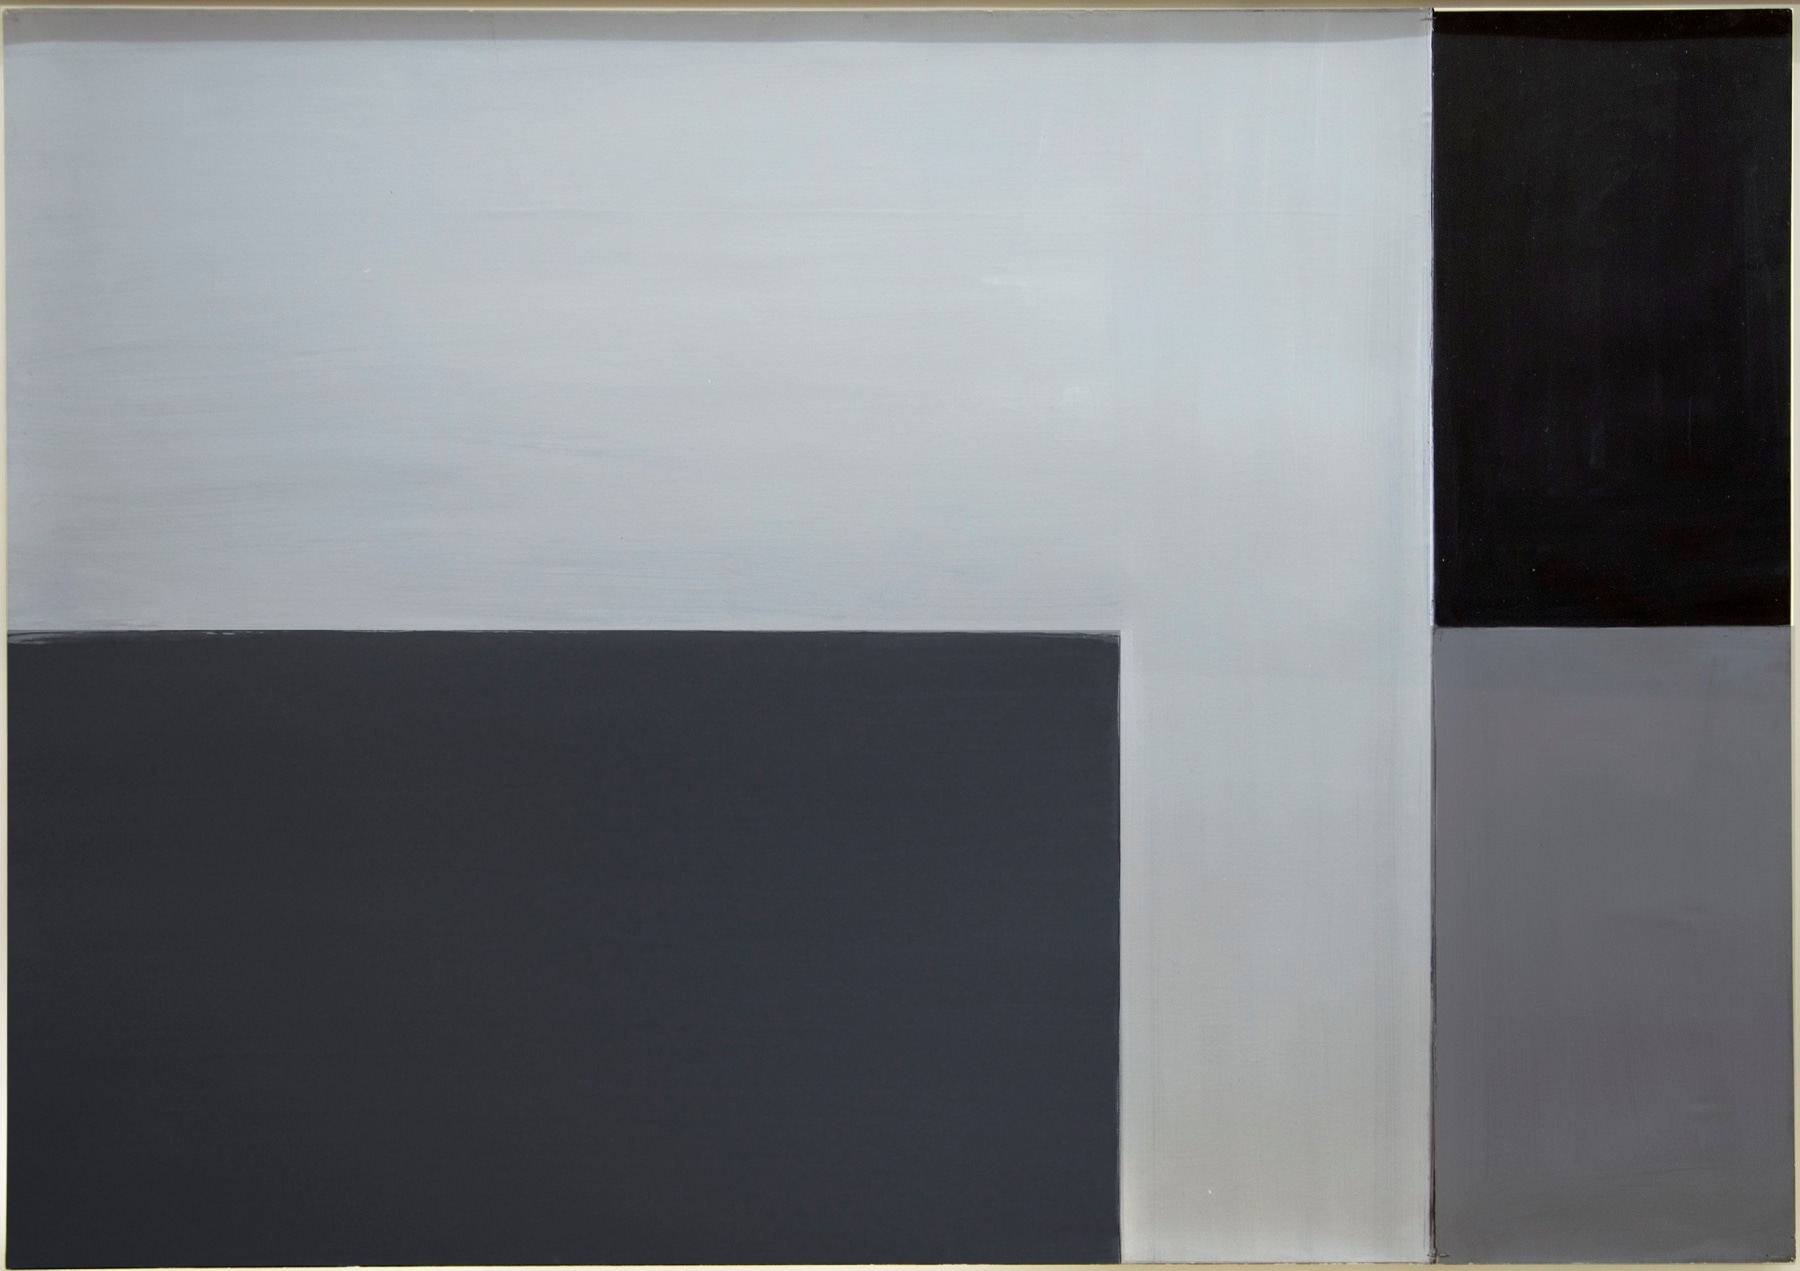 Helmut Federle - Viewing Room - Peter Blum Gallery, New York